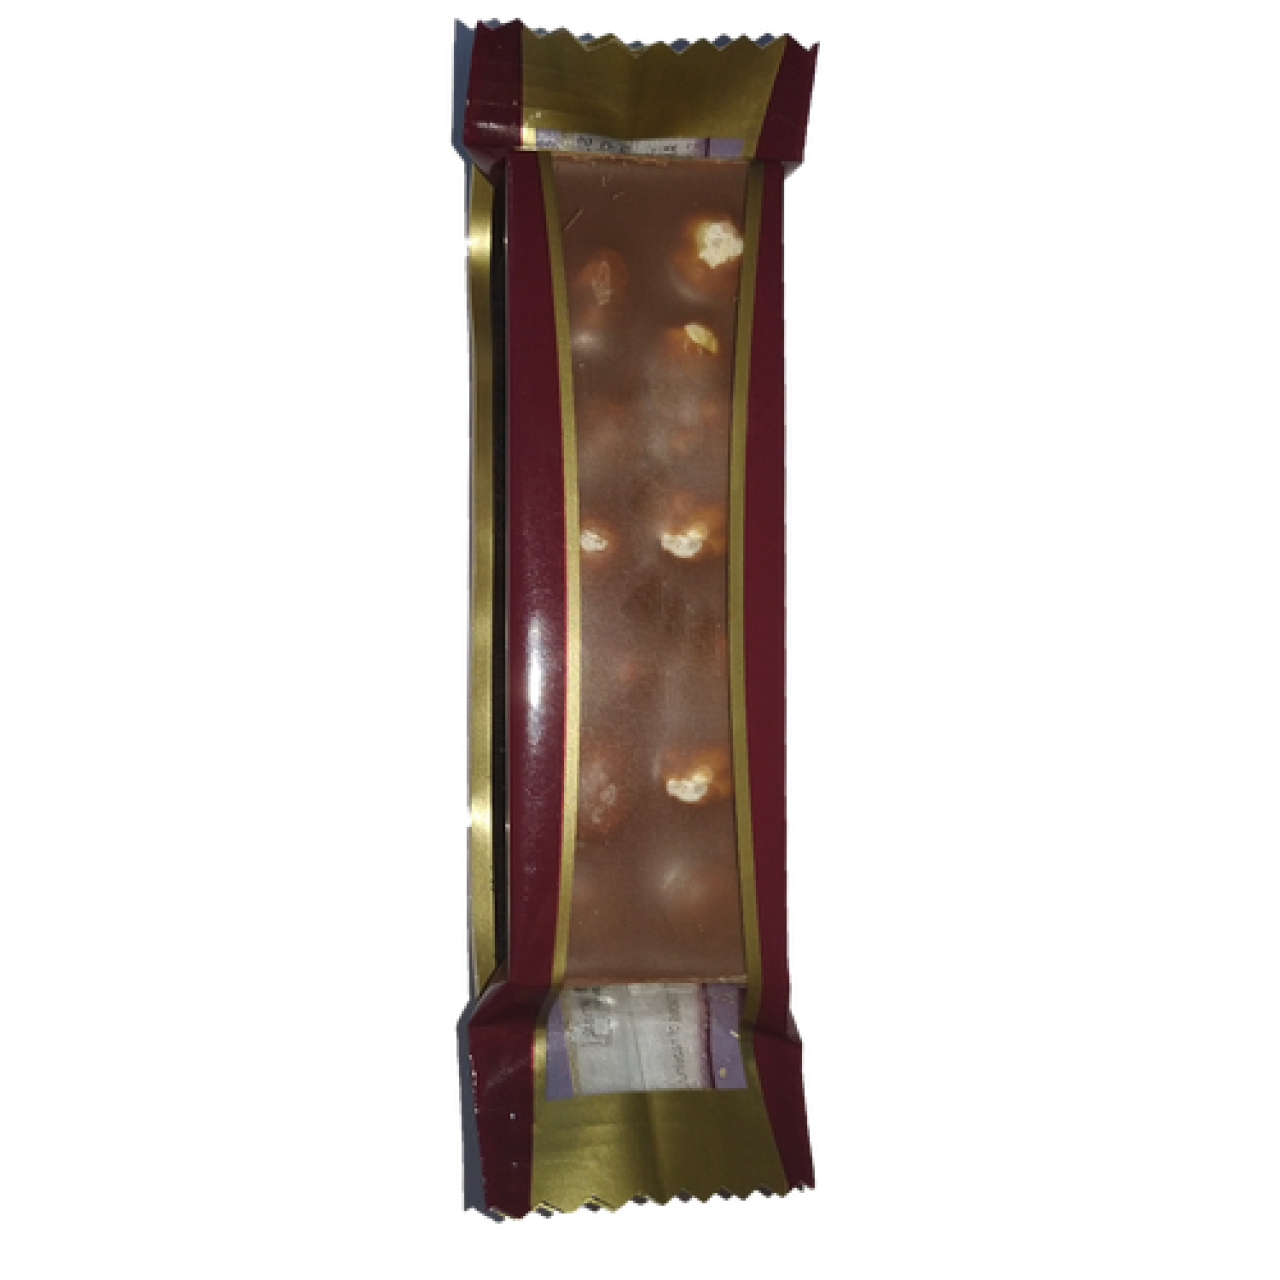 Milat Beyoğlu Fındıklı Sütlü Çikolata 24 GR